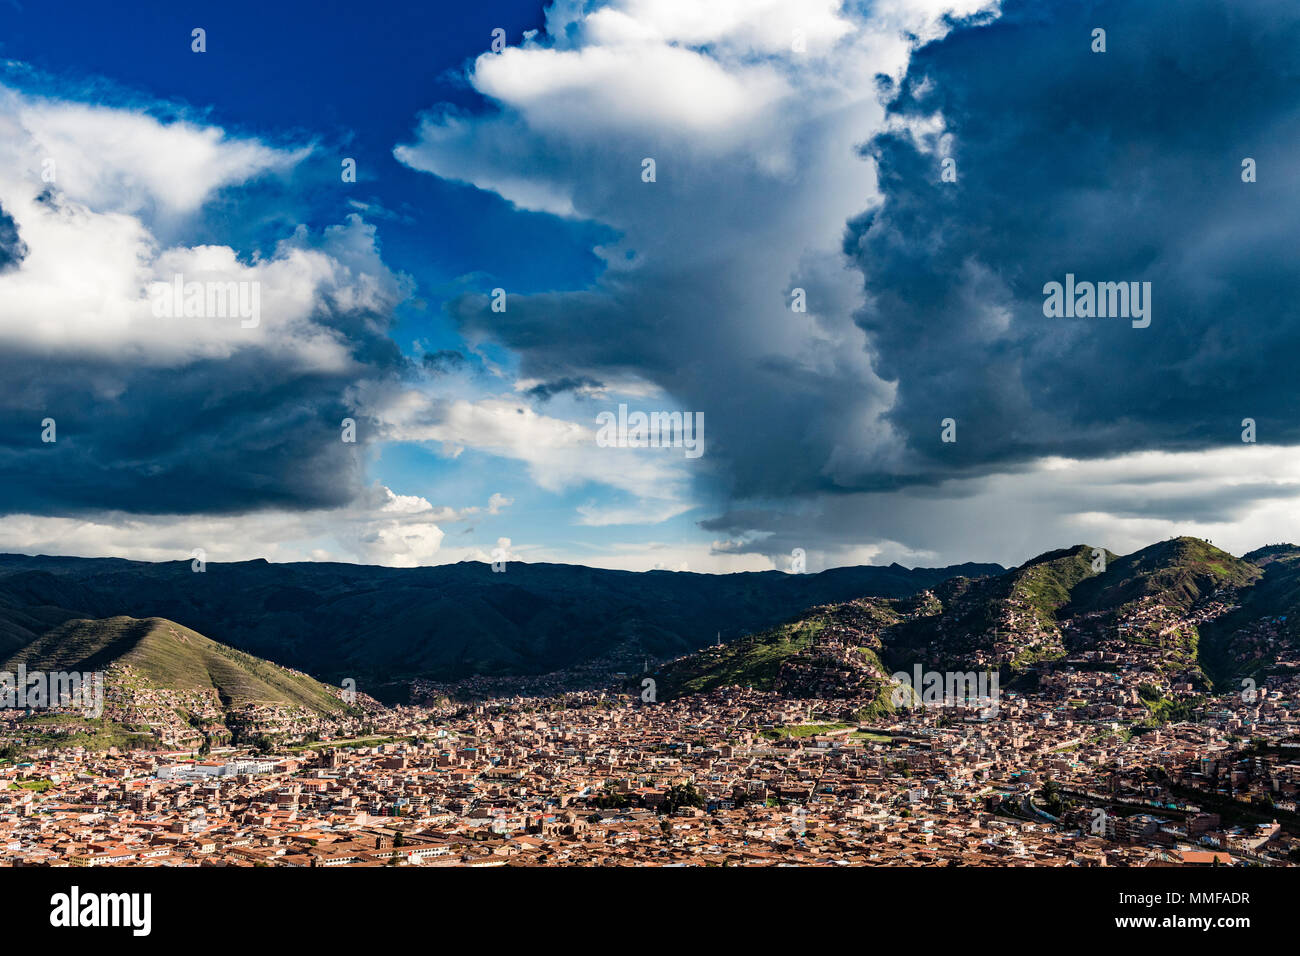 Infausto aria di tempesta oltre la Cordigliera delle Ande e tetti in terracotta di Cusco. Foto Stock